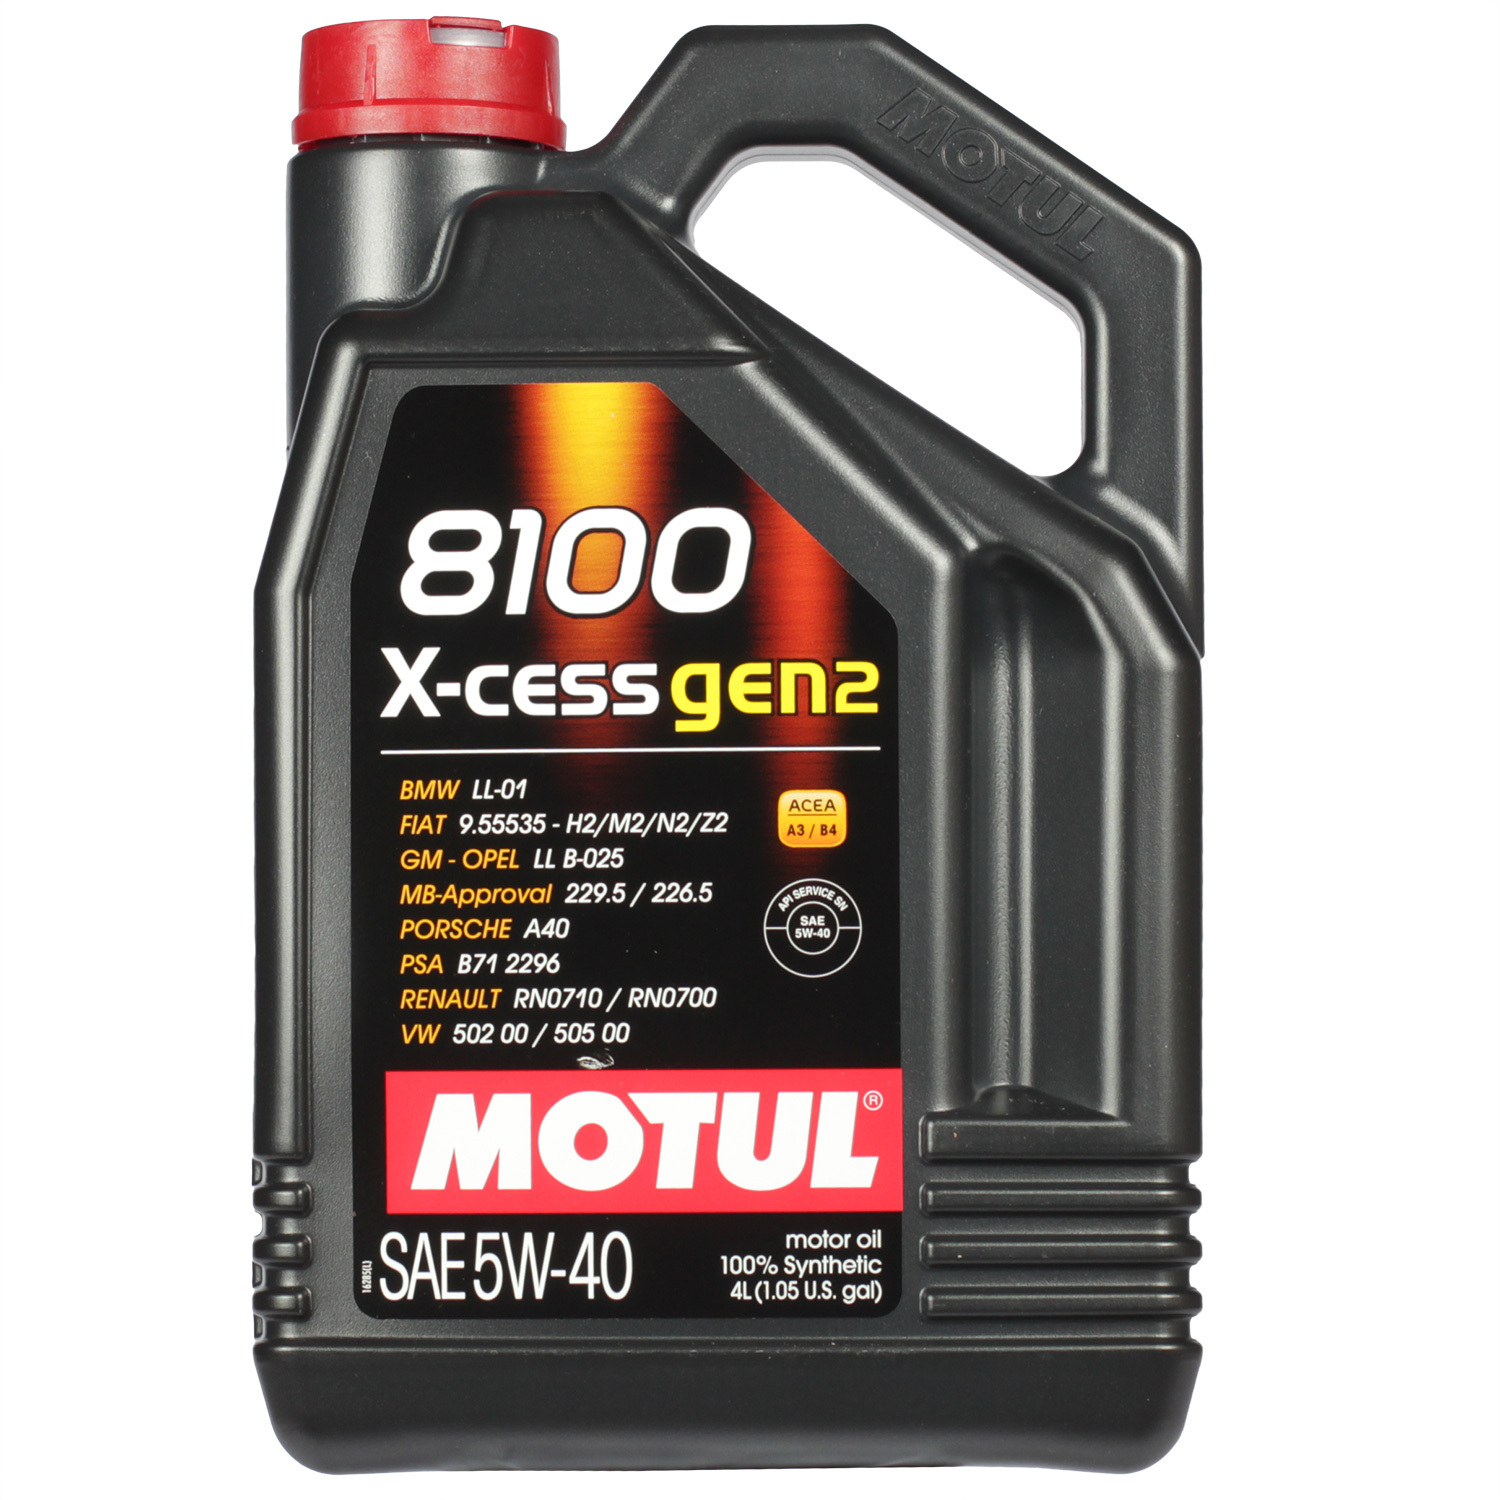 Motul Моторное масло Motul 8100 X-cess gen2 5W-40, 4 л масло моторное motul 8100 x clean 5w 30 синтетическое 5 л